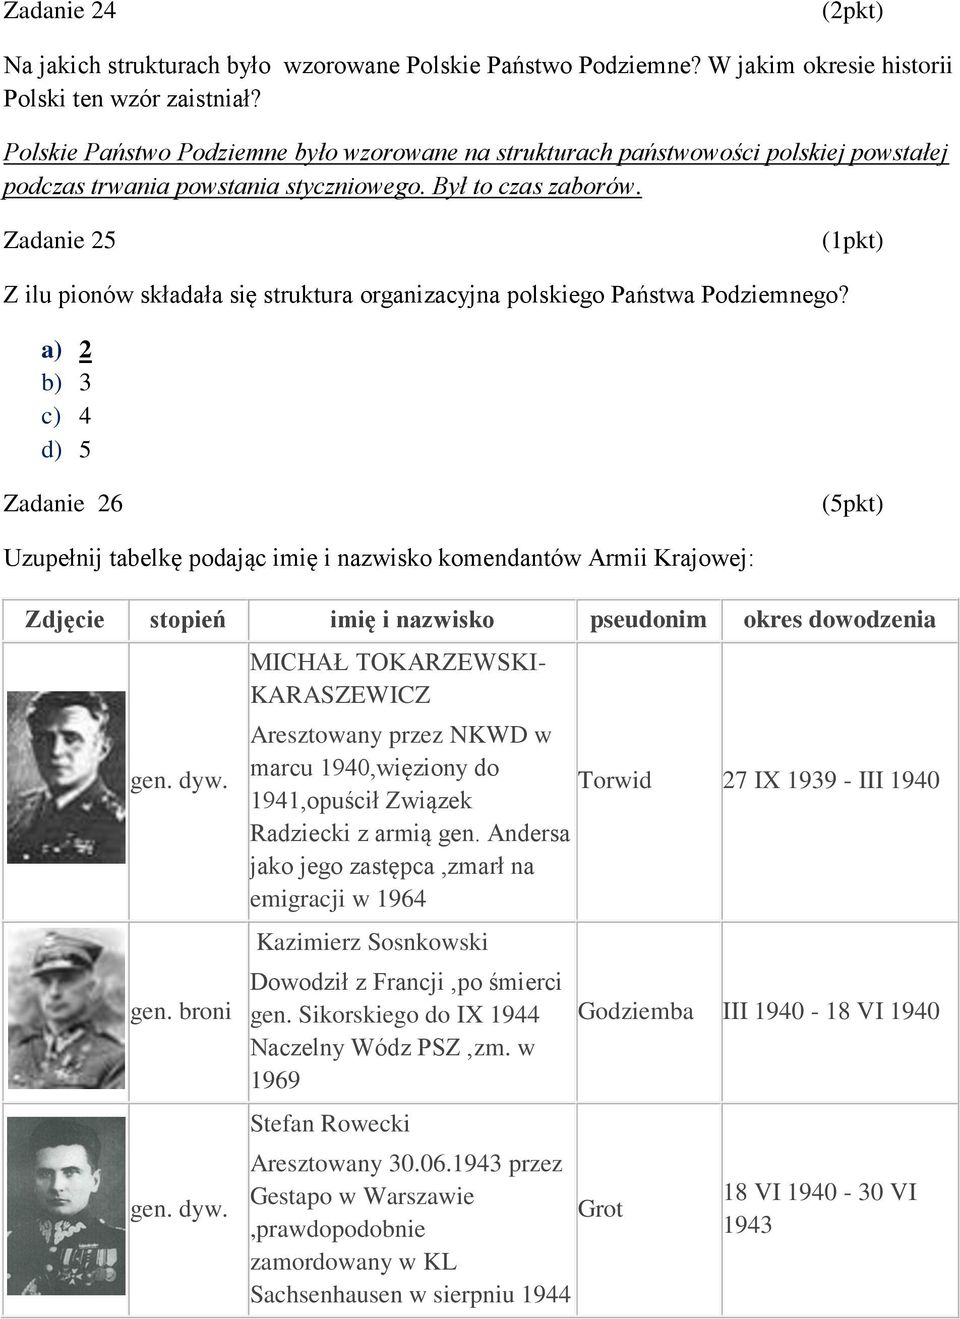 Zadanie 25 Z ilu pionów składała się struktura organizacyjna polskiego Państwa Podziemnego?